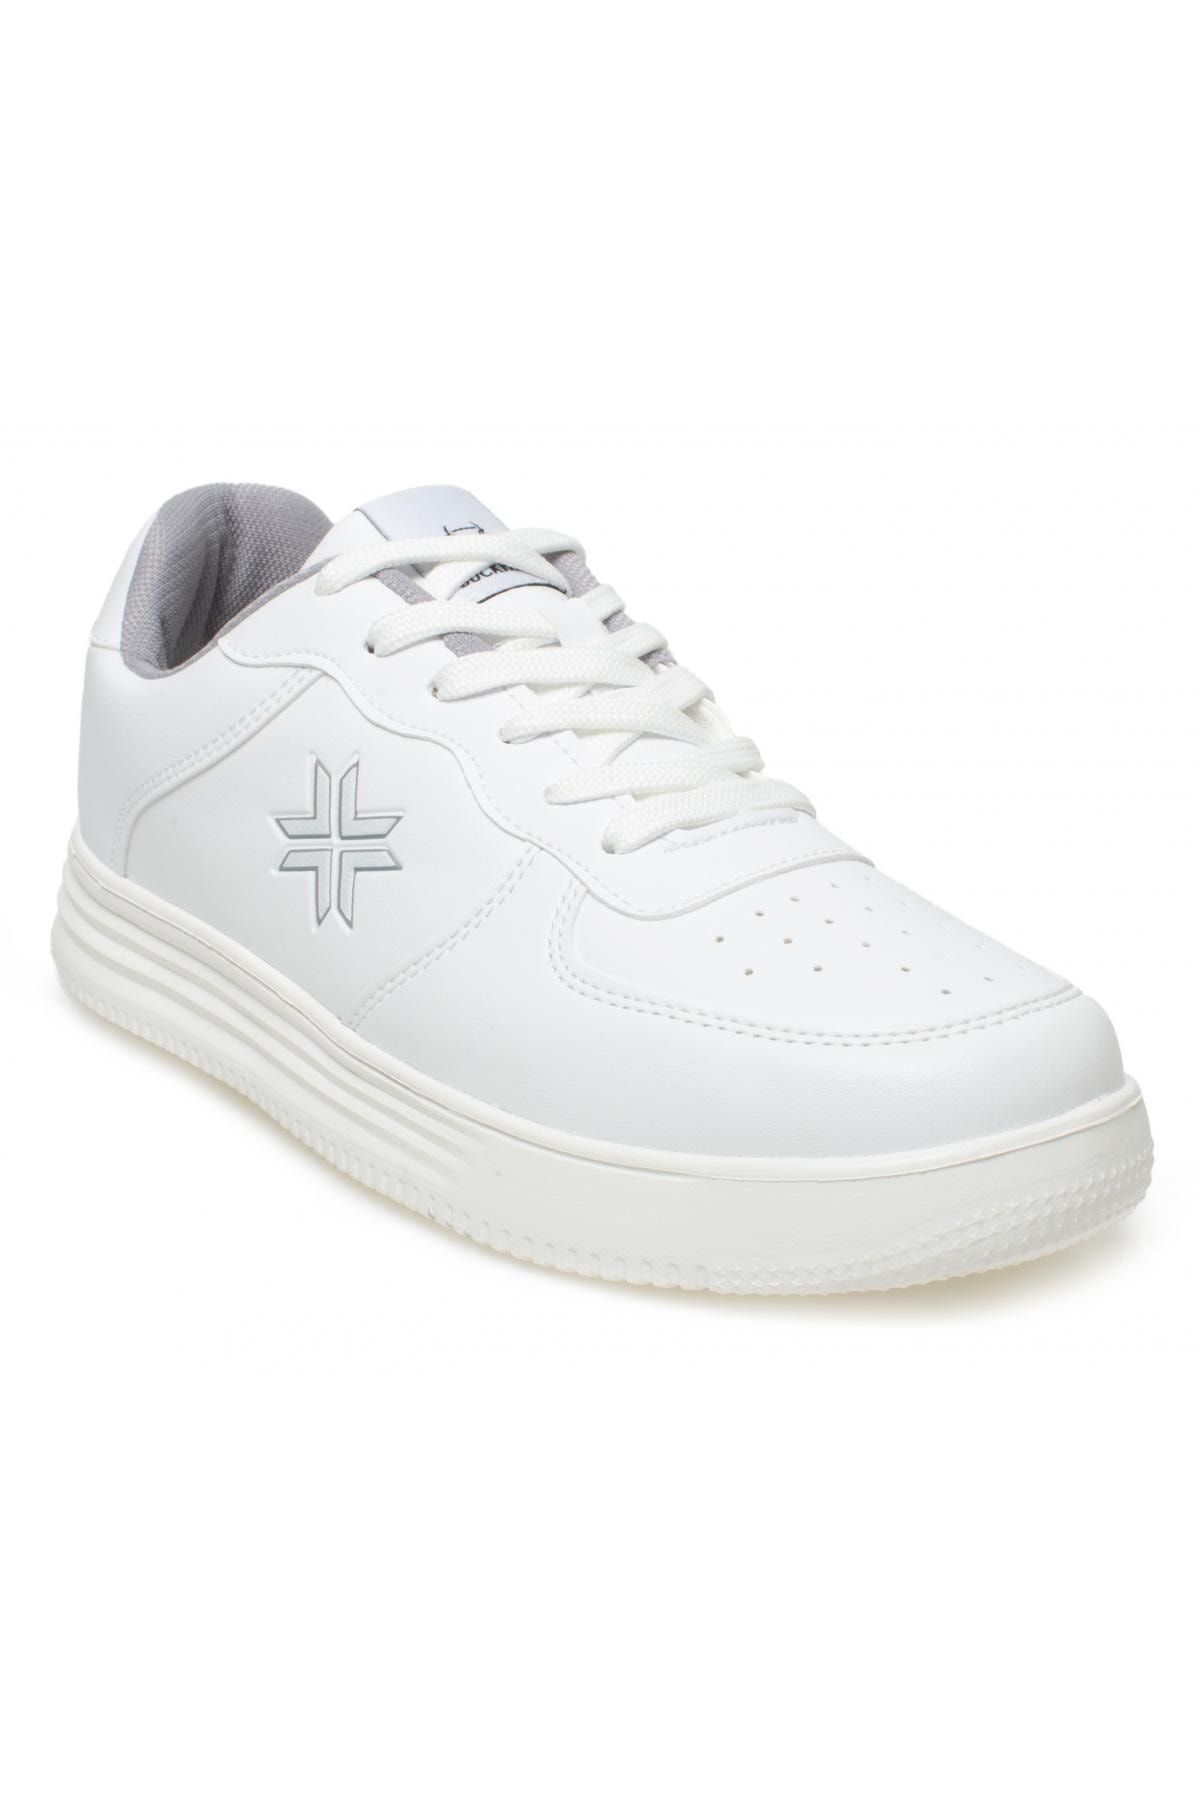 BUCKHEAD 4196 Base Sneakers Beyaz Unisex Spor Ayakkabı